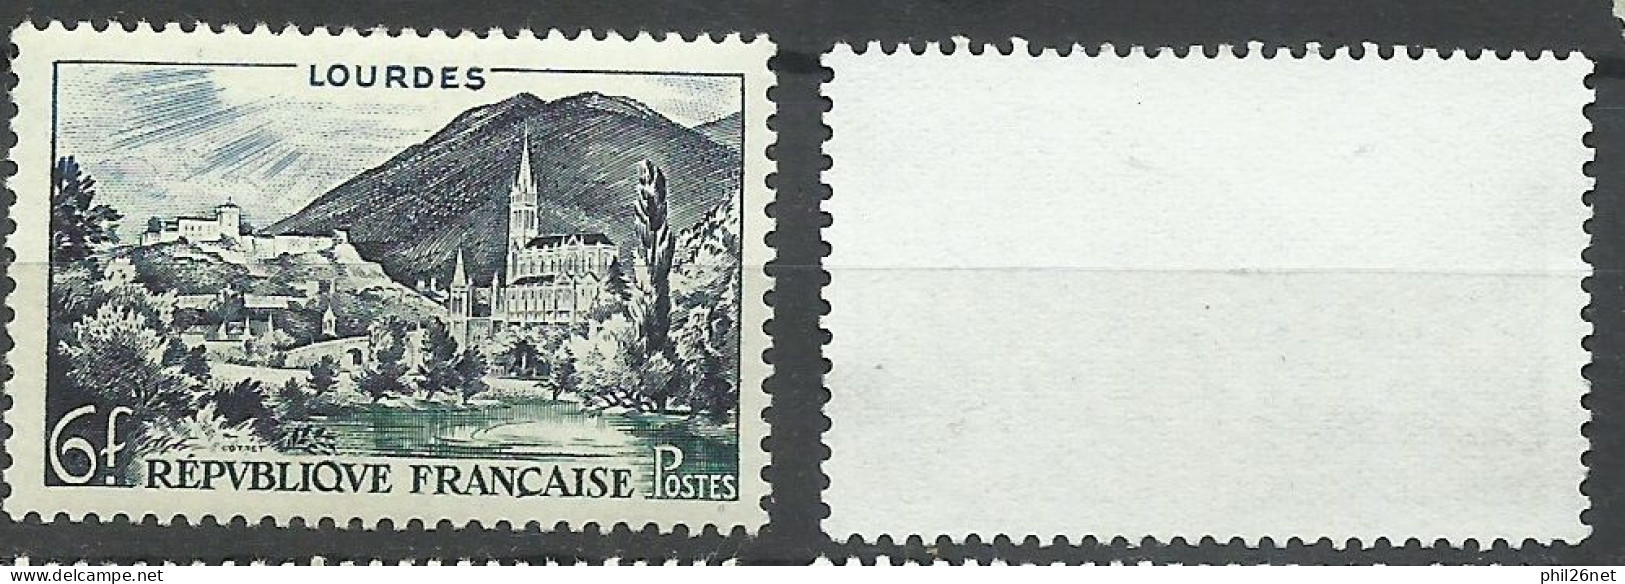 France  N° 976   Lourdes Bleu Ciel   Neuf ( * )  B/TB Le  Timbre Type Sur Les Scans Pour Comparer Soldé ! ! ! - Unused Stamps